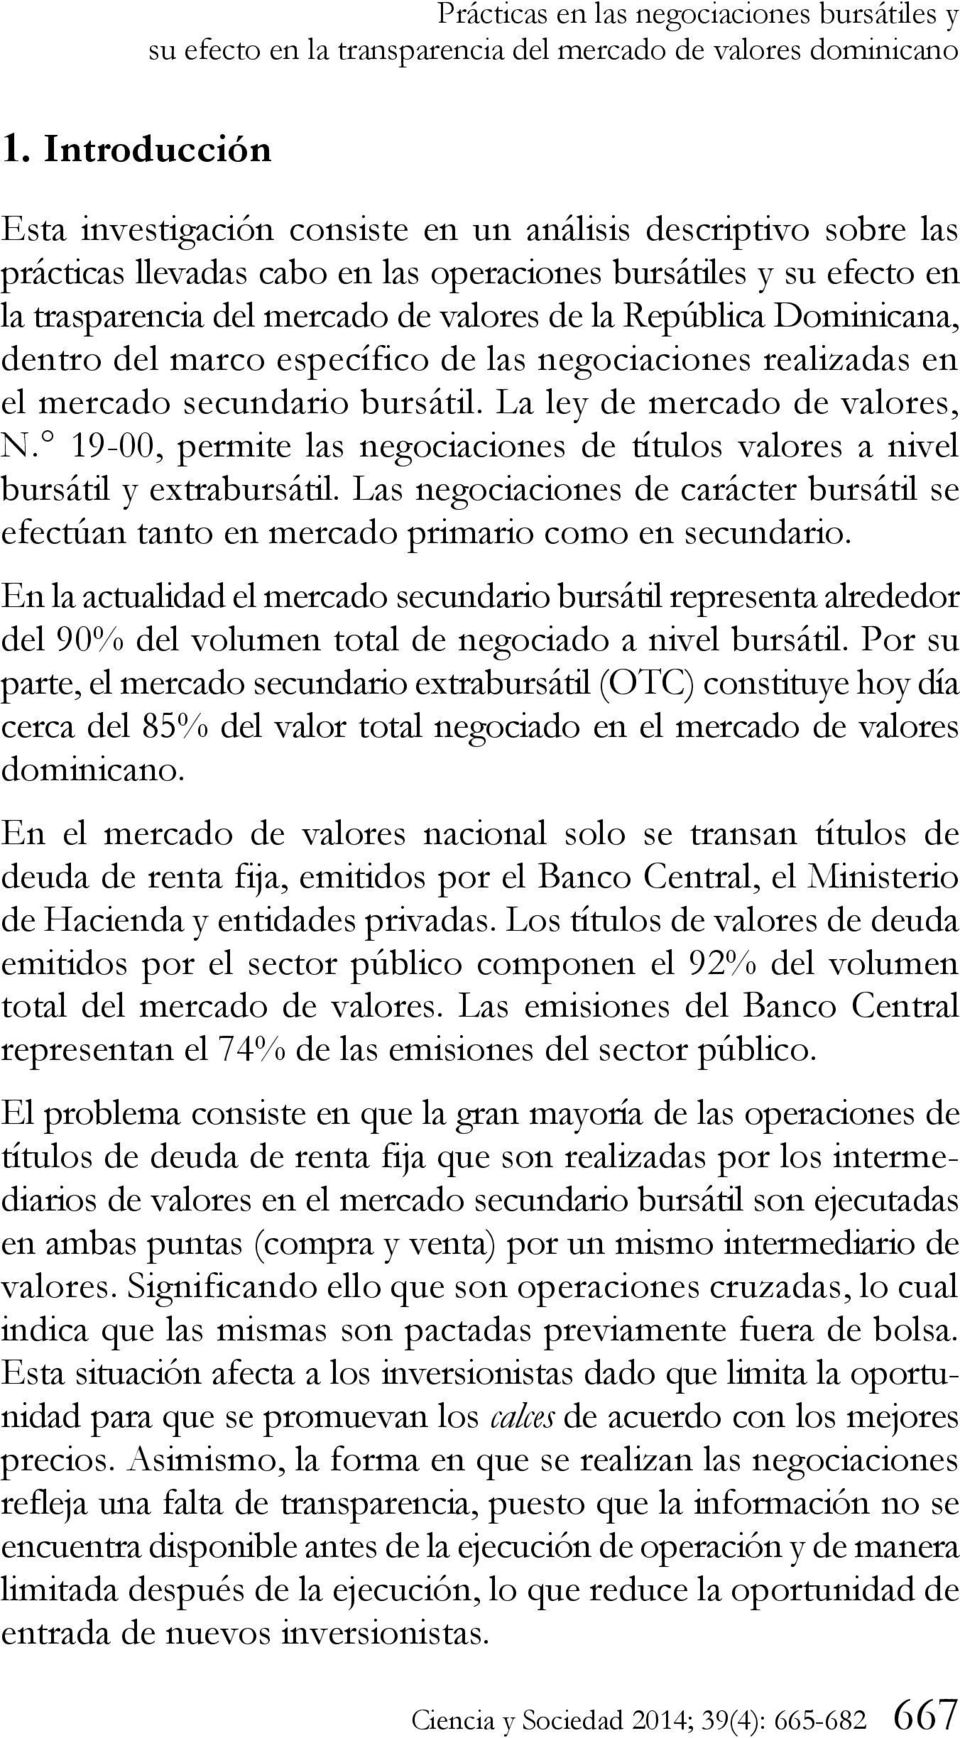 República Dominicana, dentro del marco específico de las negociaciones realizadas en el mercado secundario bursátil. La ley de mercado de valores, N.